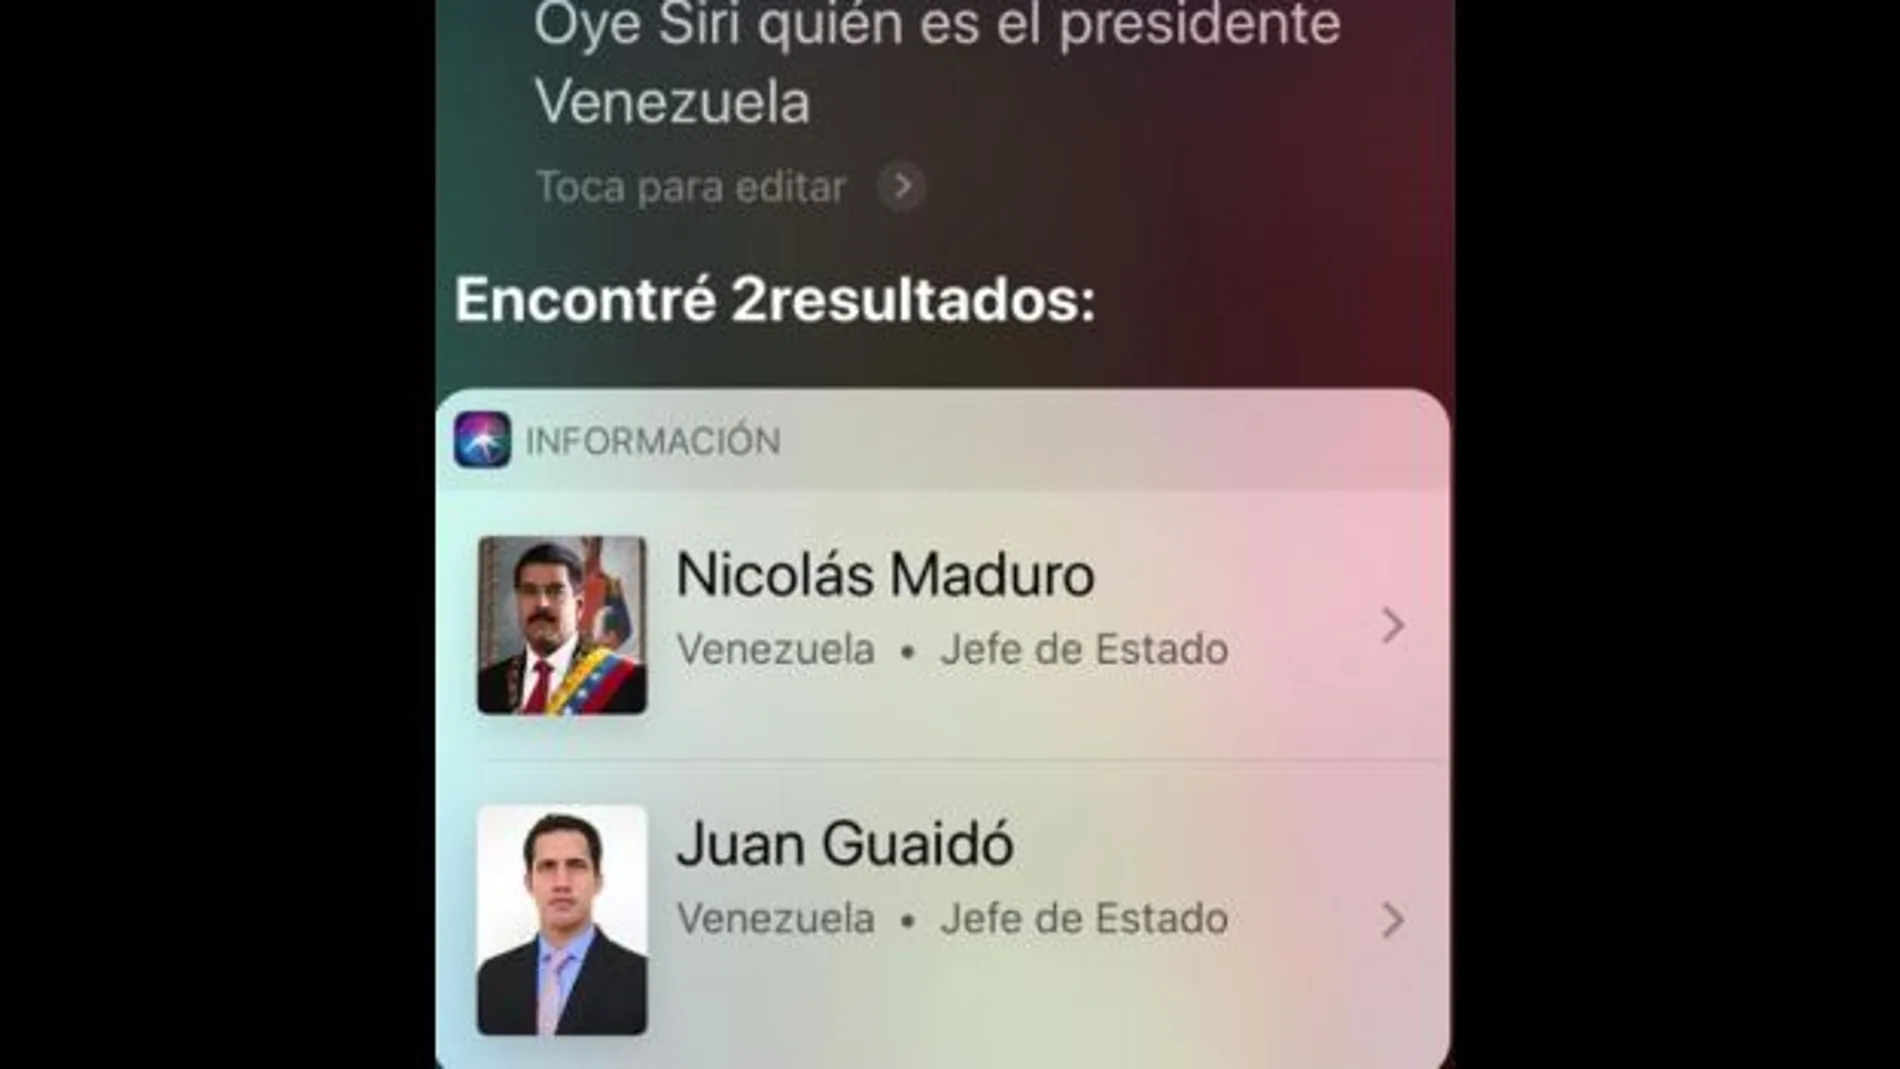 Siri reconoce tanto a Maduro como a Guaidó como presidentes de Venezuela